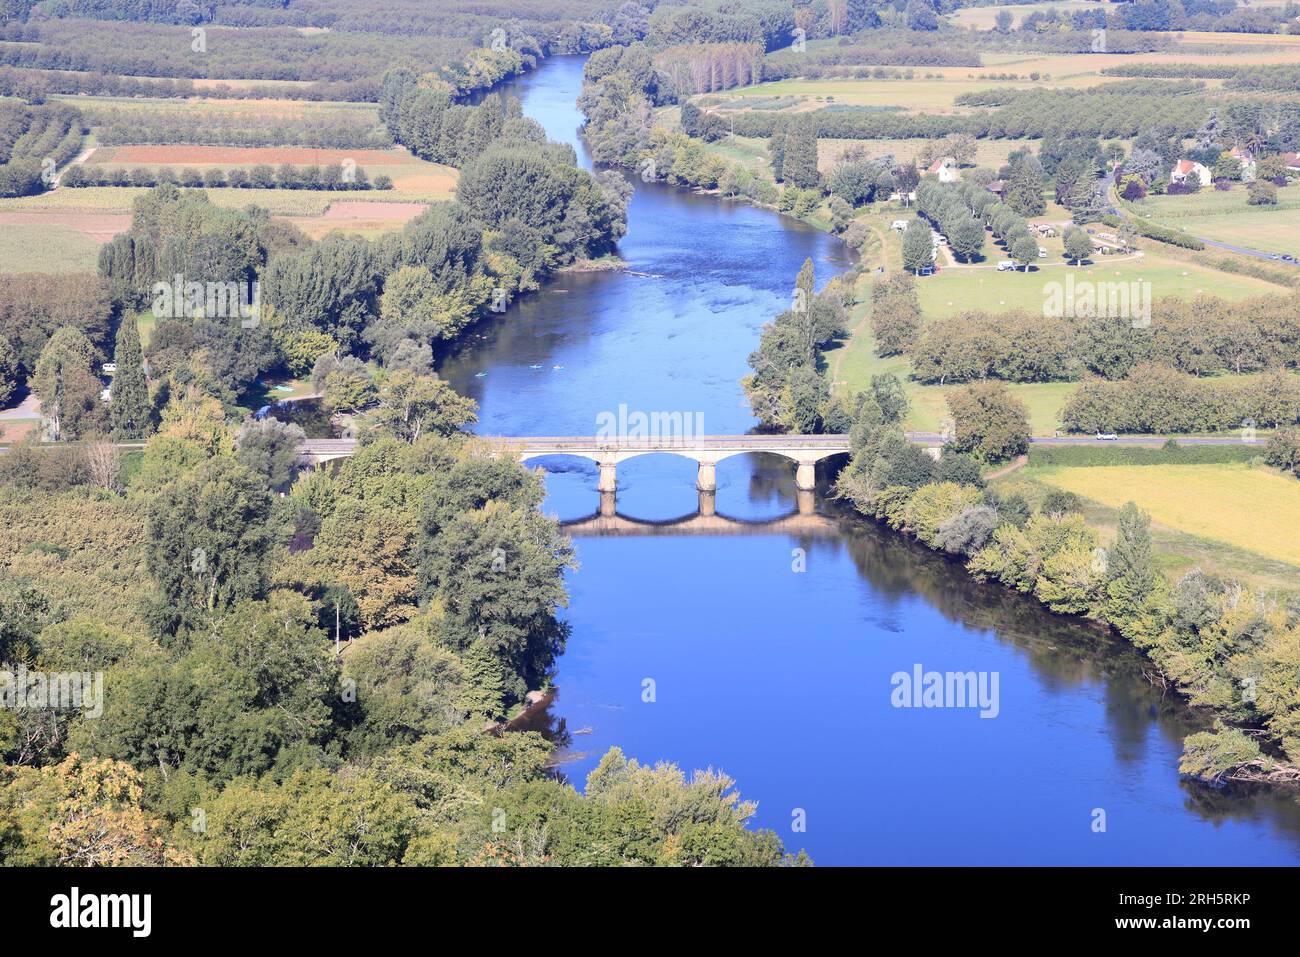 Vue aérienne de la rivière Dordogne entre Domme et la Roque-Gageac en Périgord Noir. La vallée de la Dordogne est une région de polyculture et de tour Foto Stock